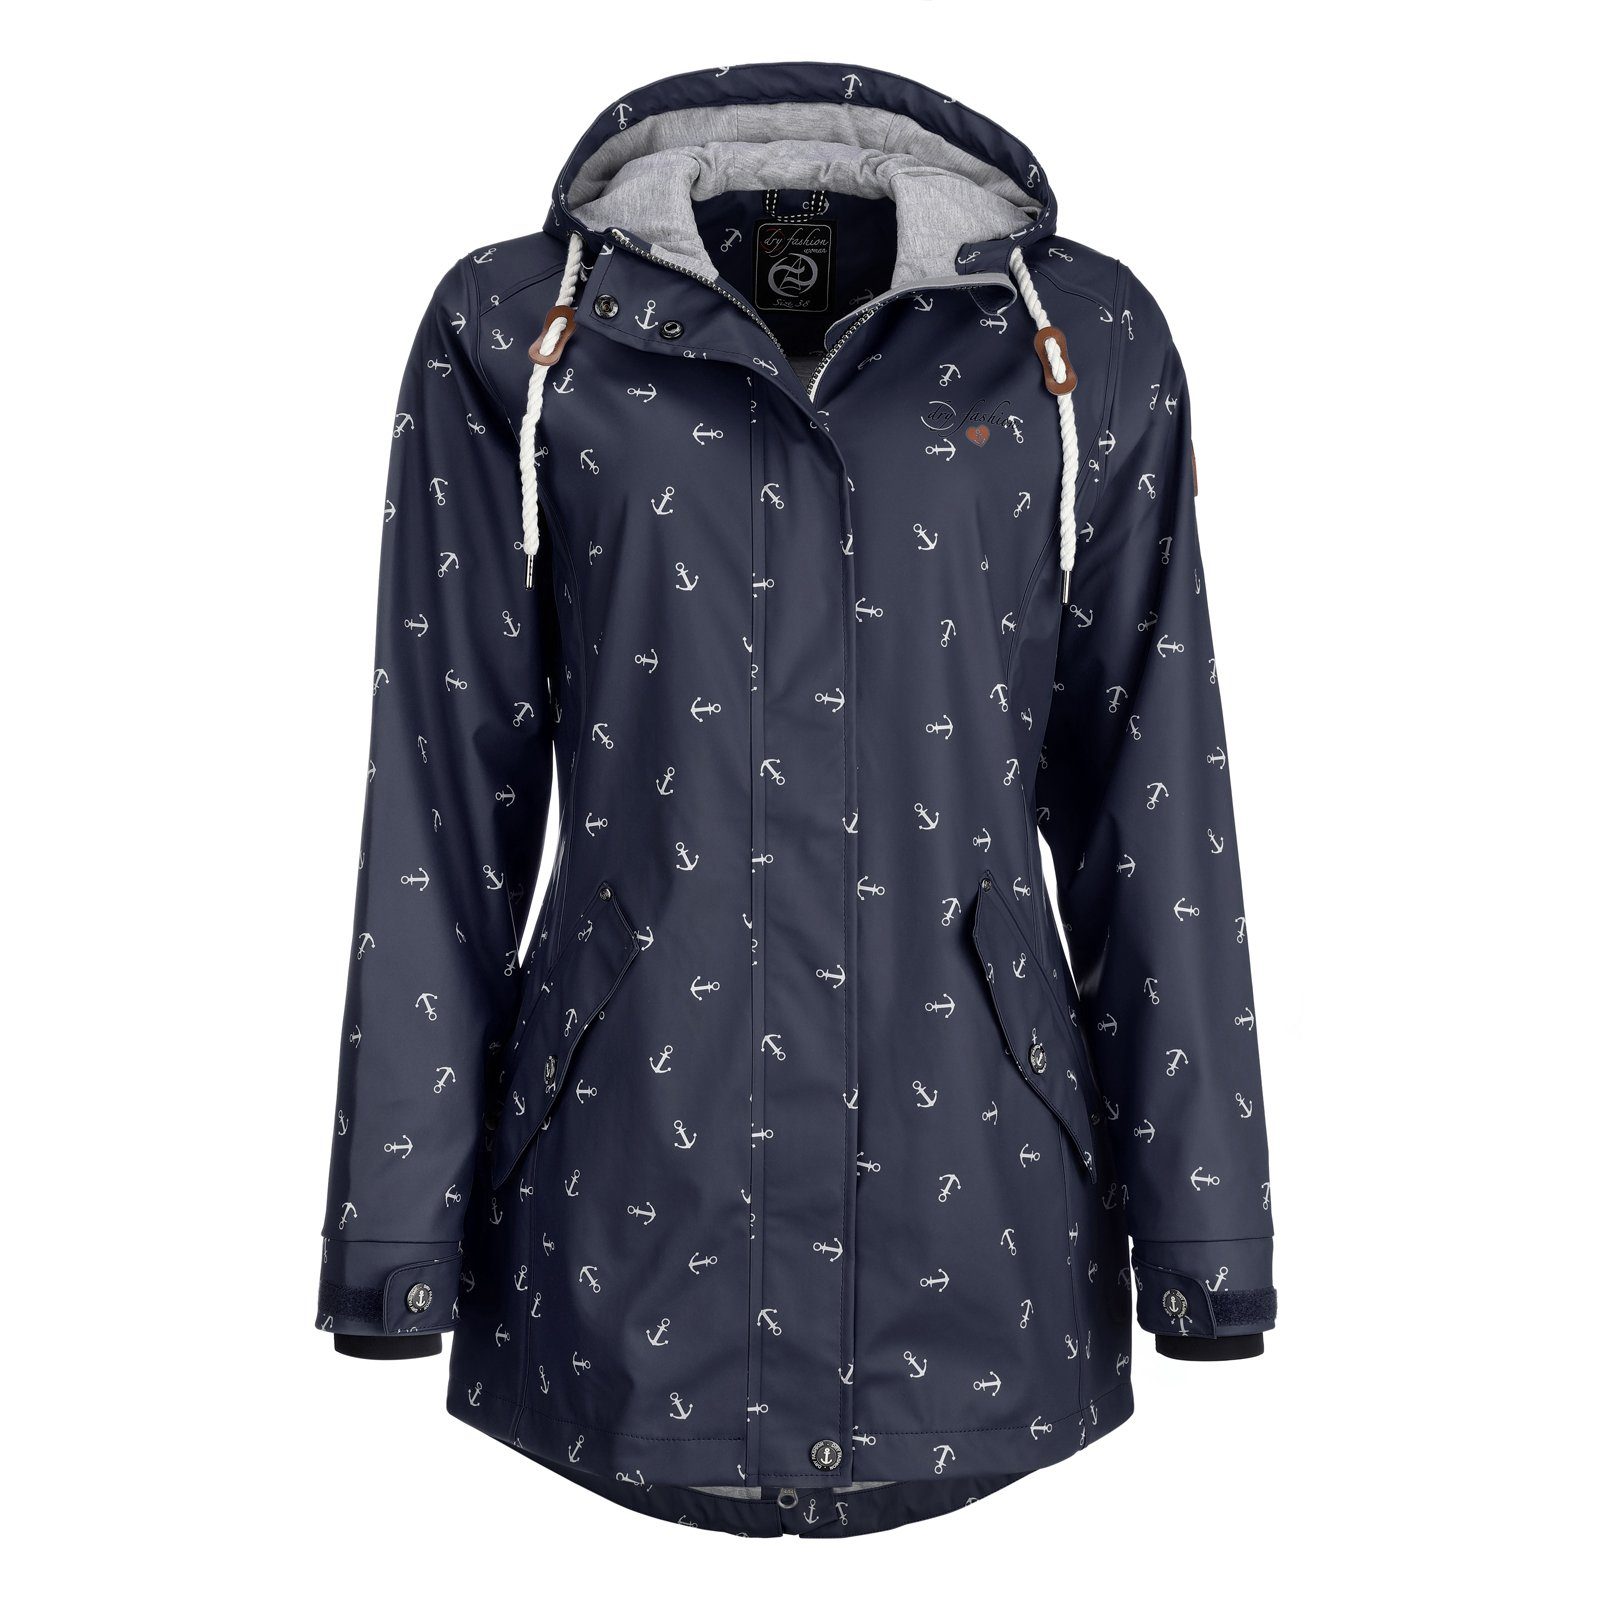 Dry Fashion Regenjacke Damen Regenmantel Cuxhaven - Anker-Print Jacke mit  Kapuze - winddicht und wasserdicht online kaufen | OTTO